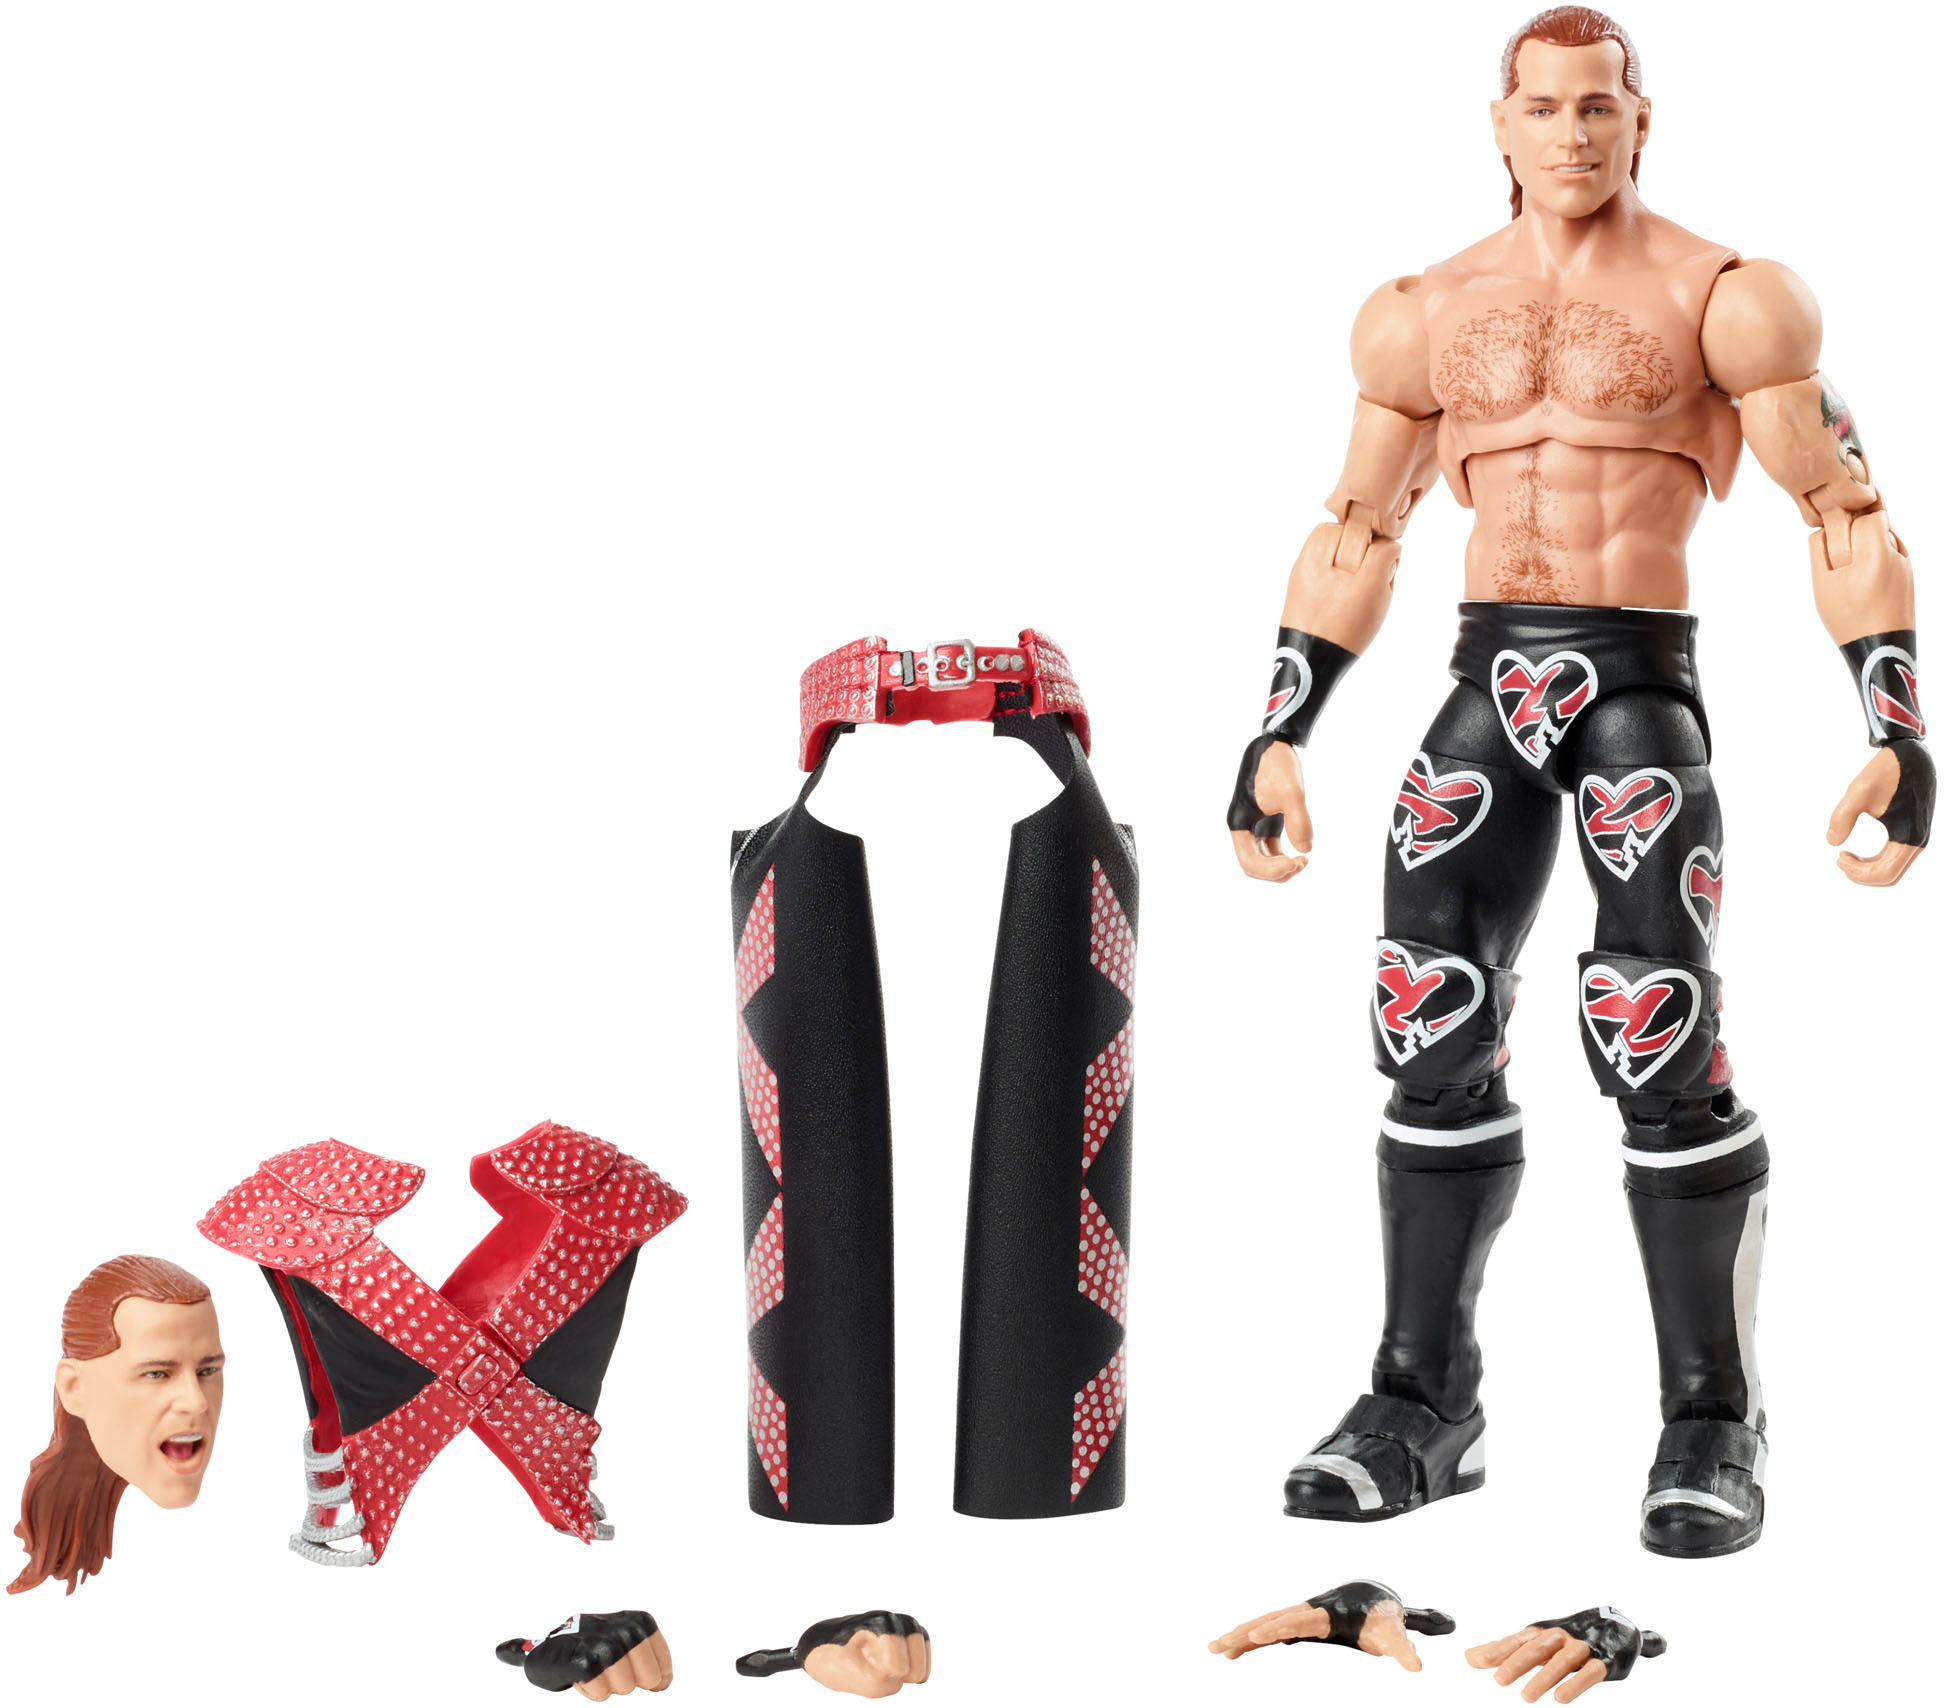 Mattel Figuras de acción de la WWE, Ultimate Edition AJ Styles figura y  accesorios, 6 pulgadas, juguetes coleccionables de la WWE